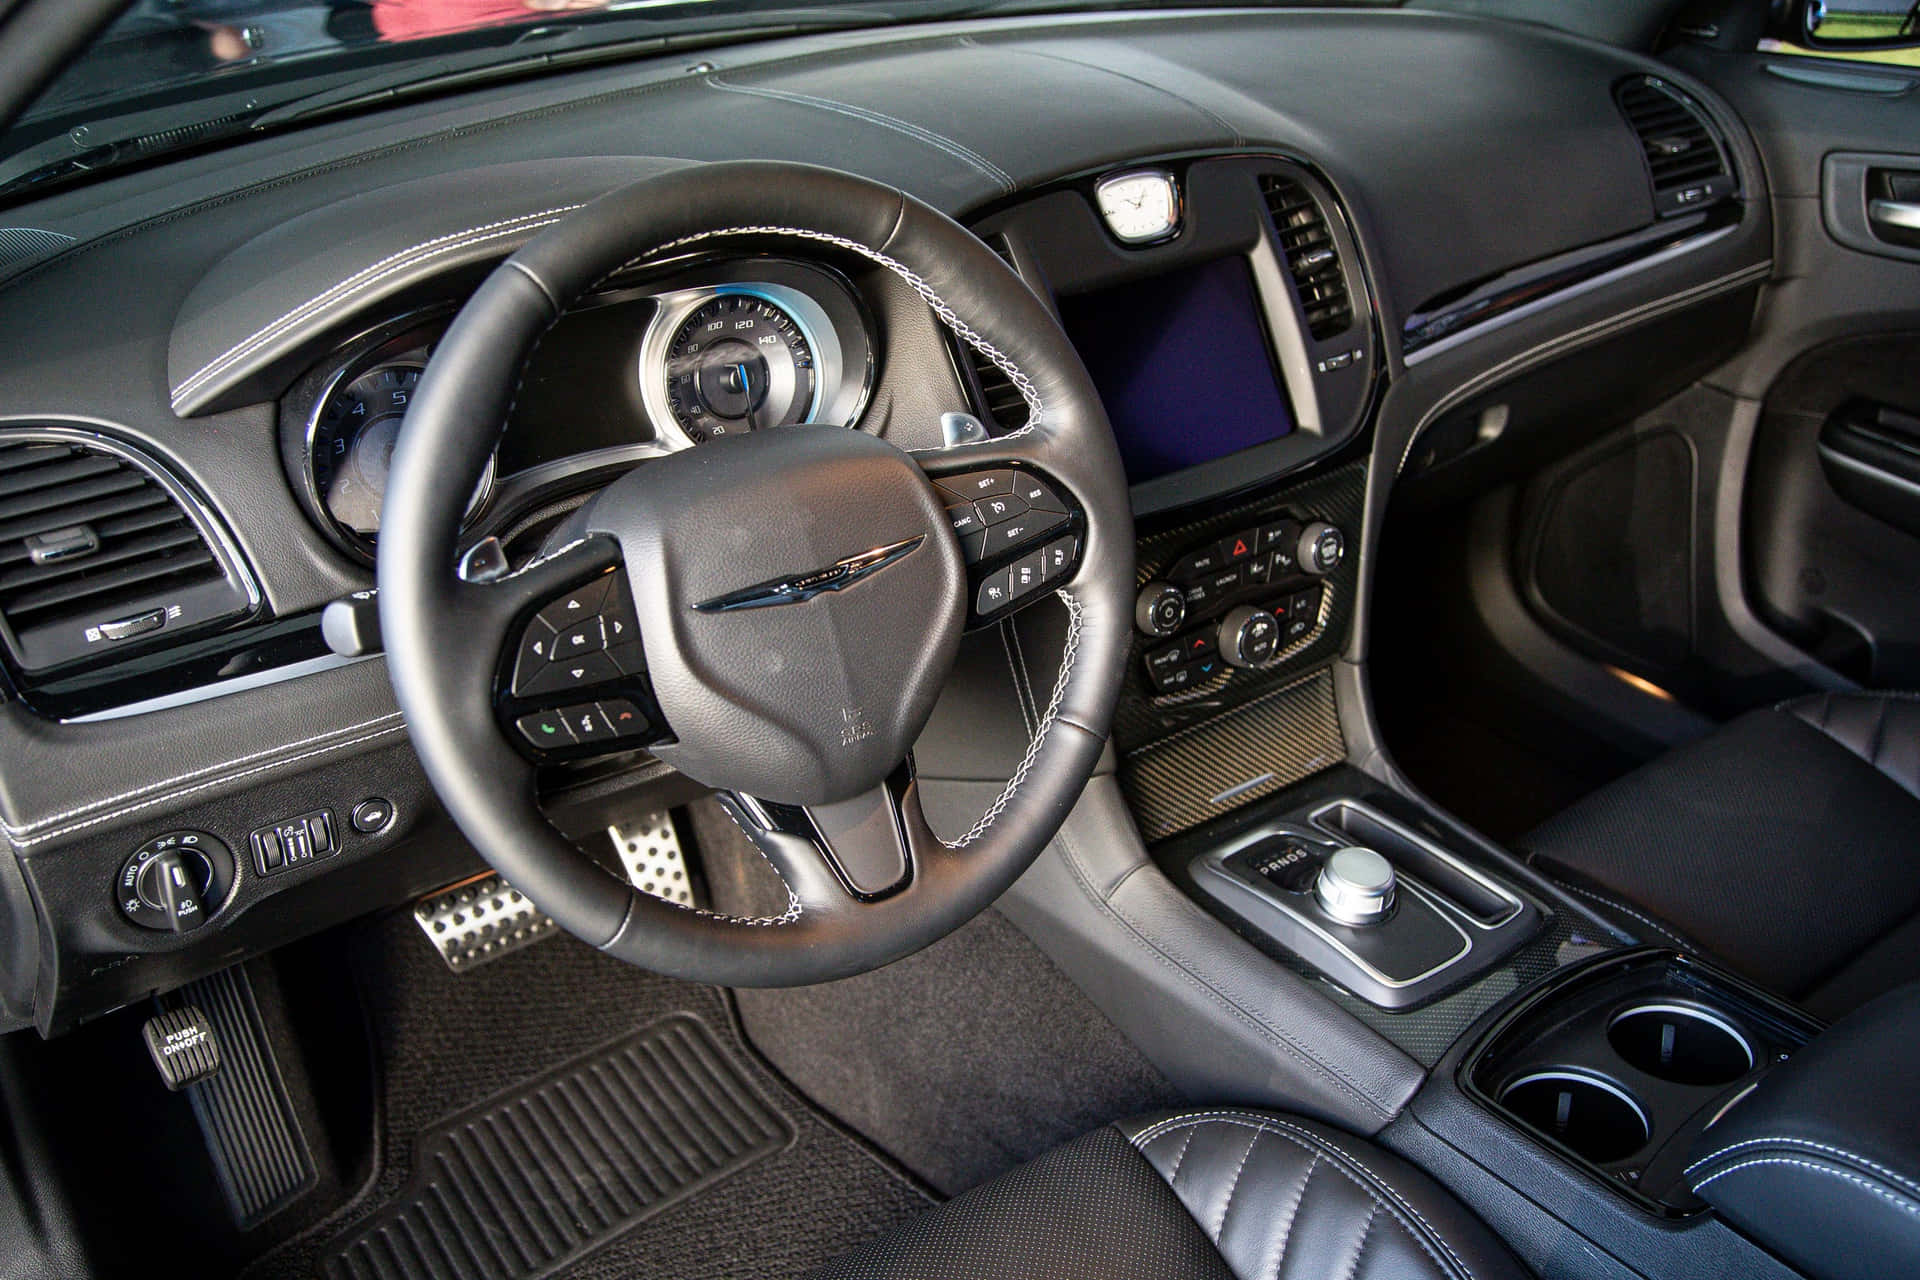 Oplevførsteklasses Luksus I Chrysler 300.